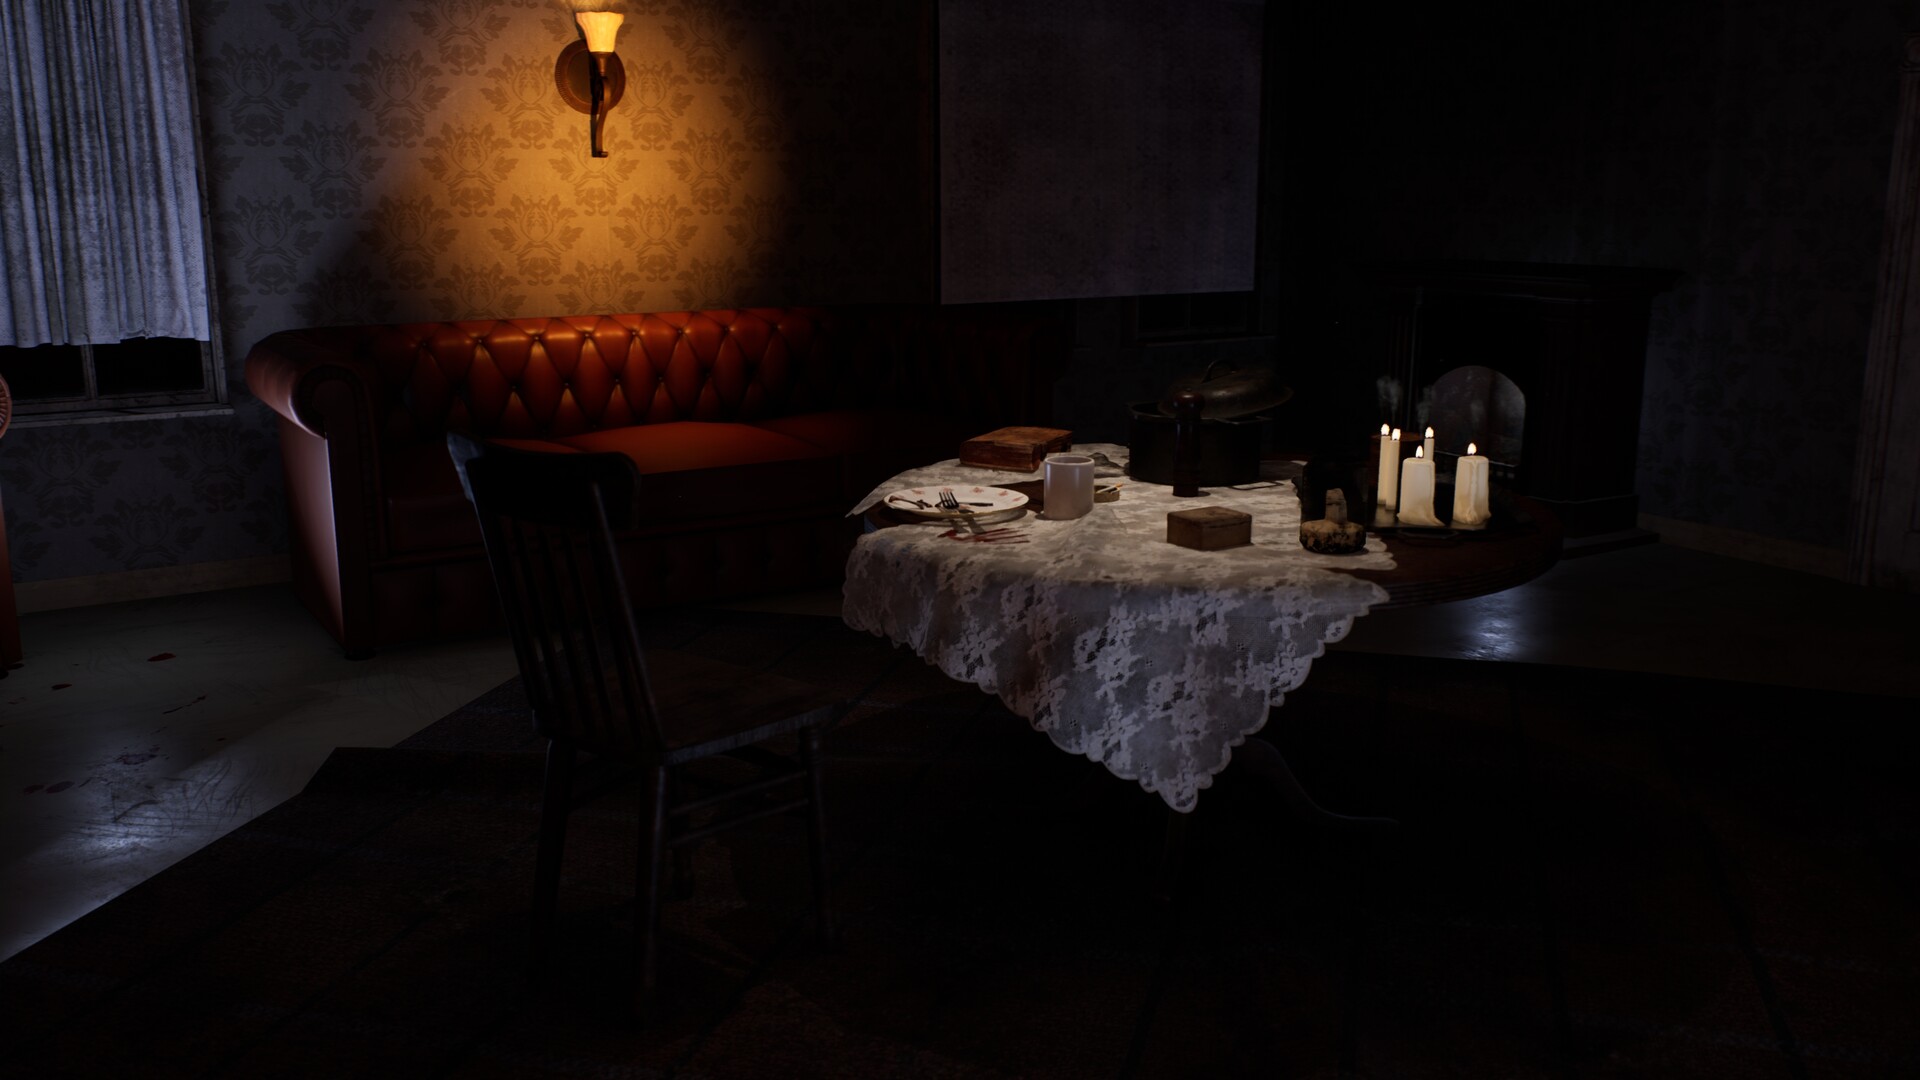 ArtStation - Horror Dining Room - UE5